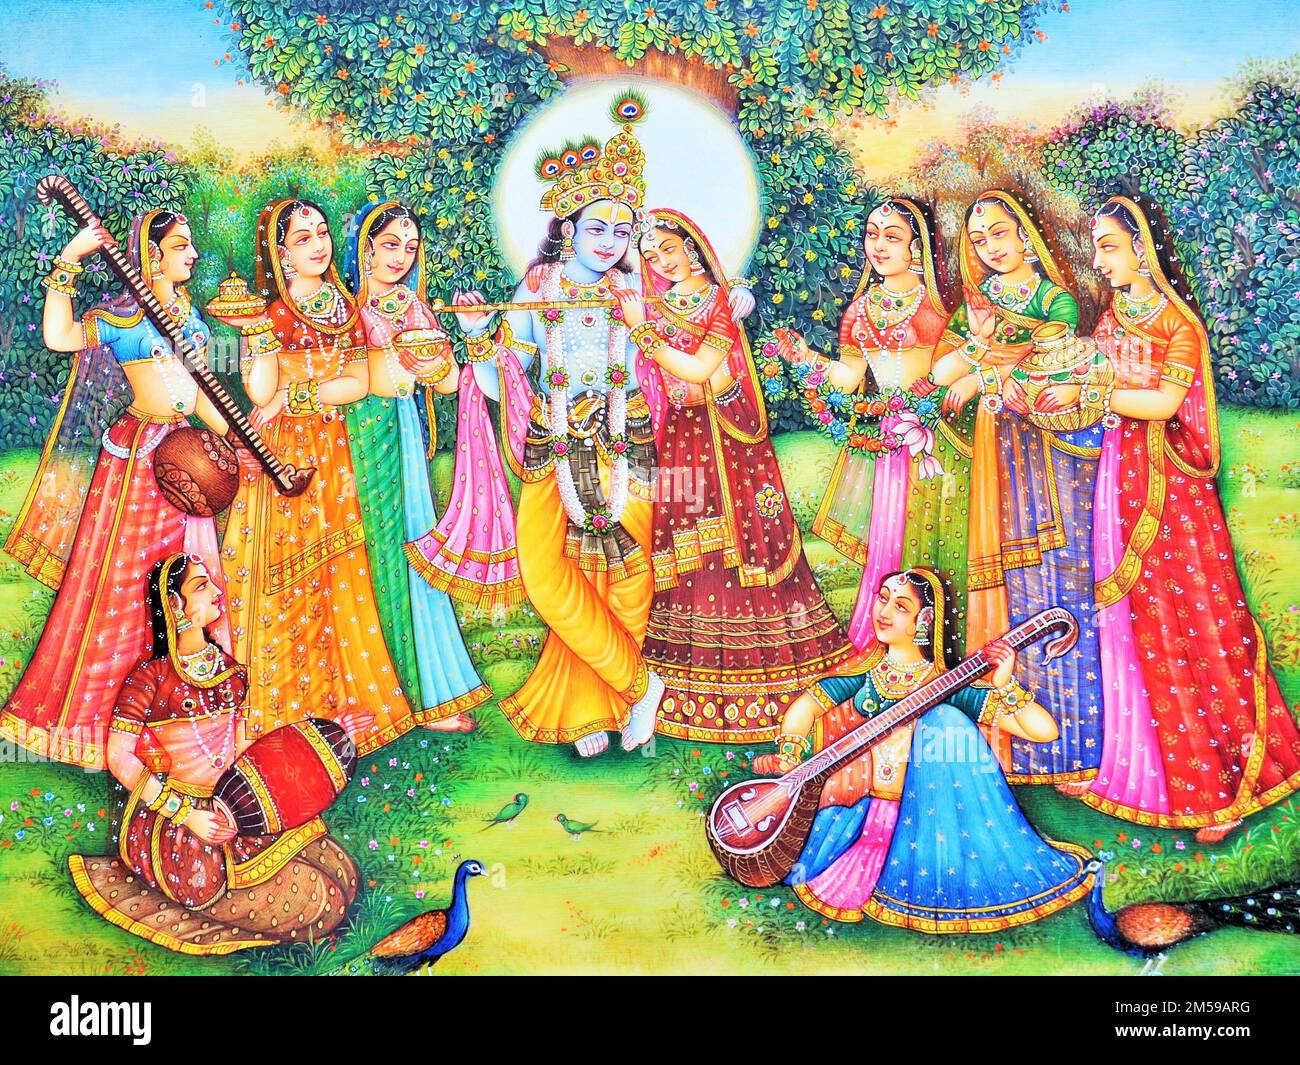 Radha Krishna with gopis artwork painting Stock Photo